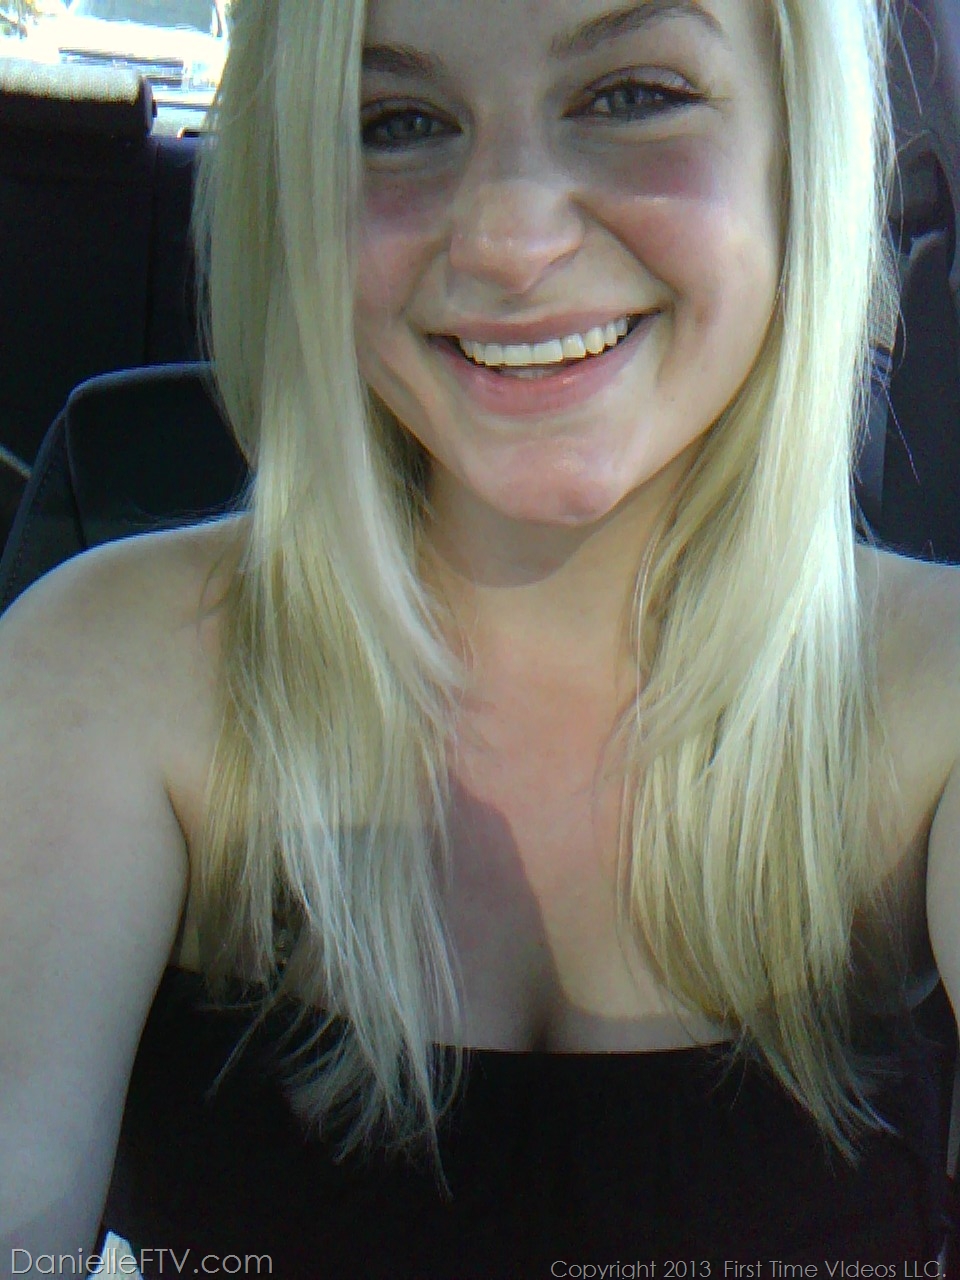 Blonde amateur Danielle Ftv dons numerous outfits for non nude selfies 色情照片 #422634170 | Danielle FTV Pics, Danielle Delaunay, Selfie, 手机色情